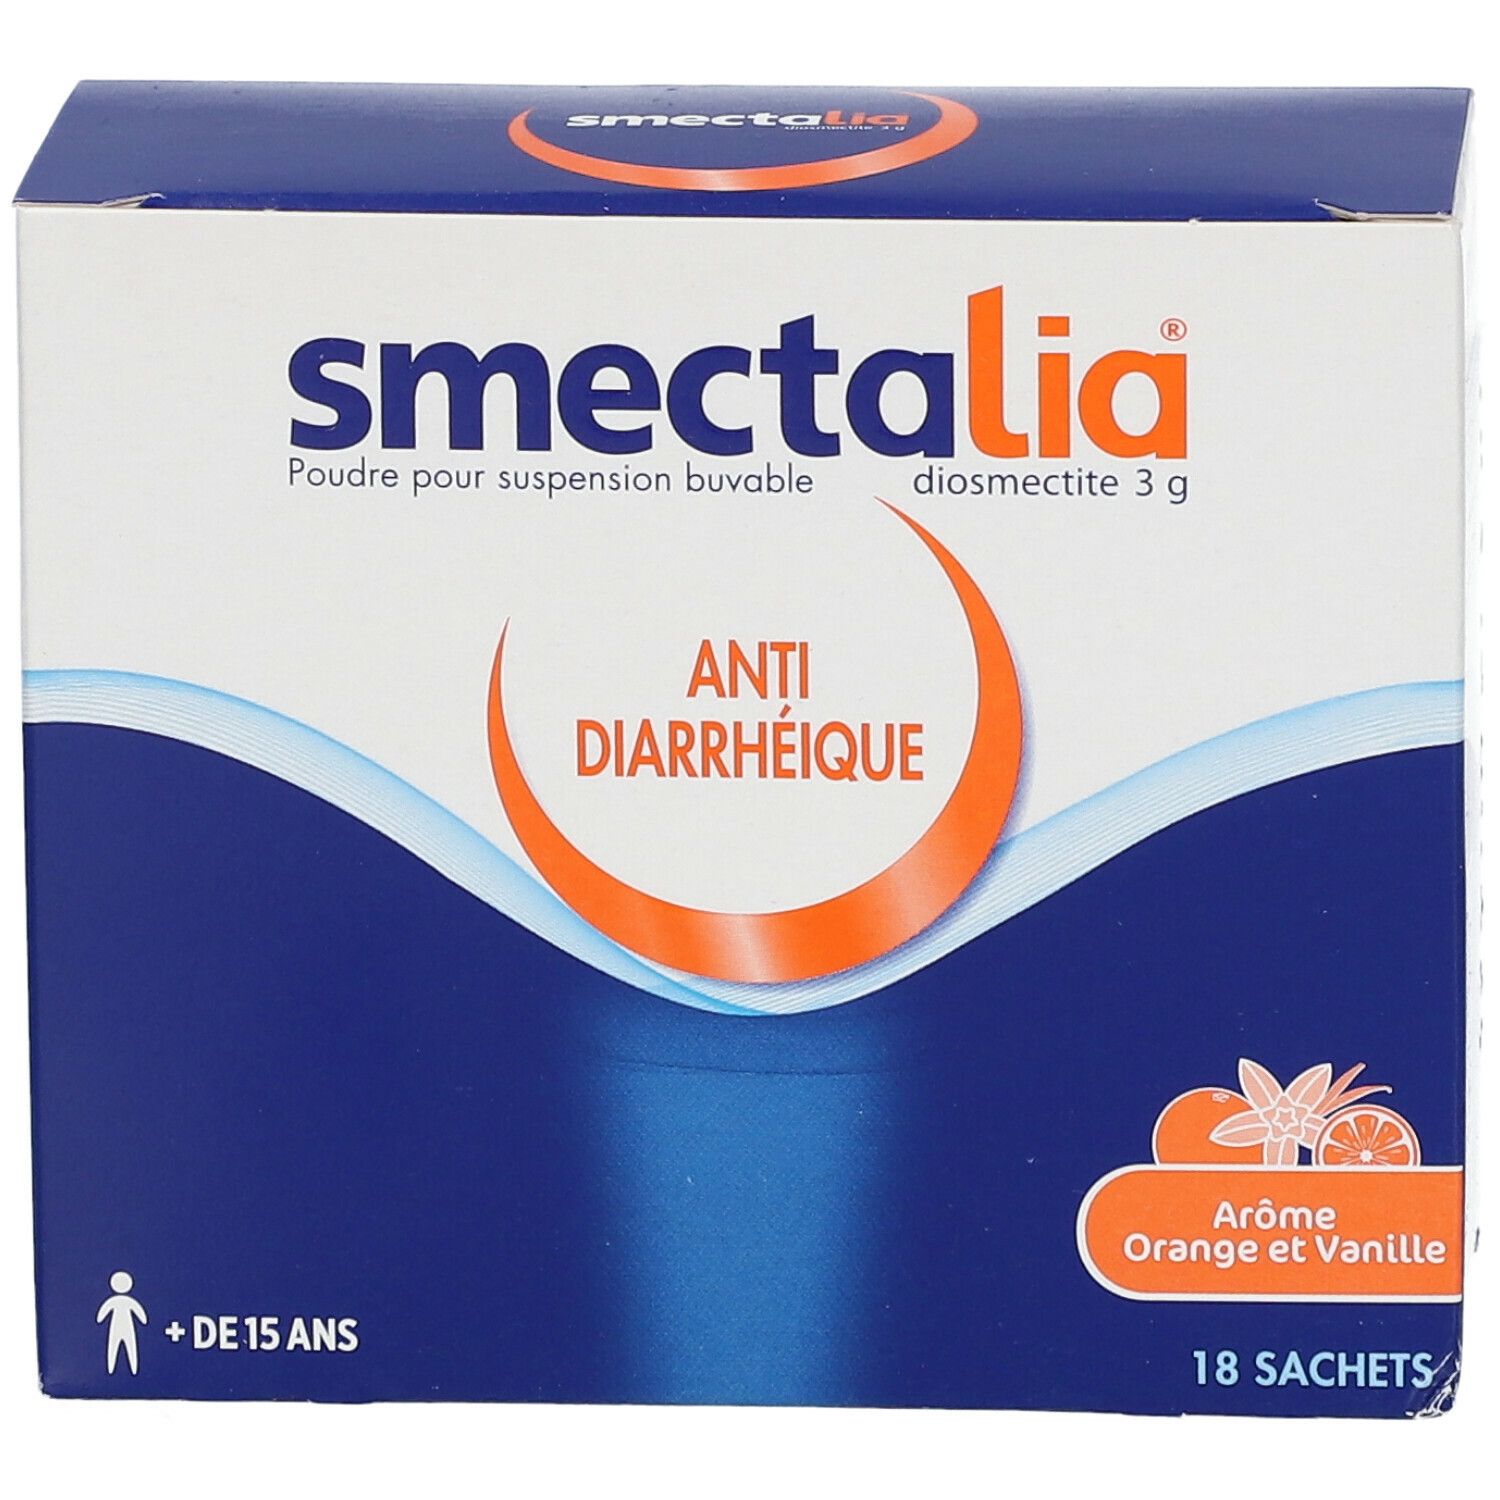 Smectalia® 3 g